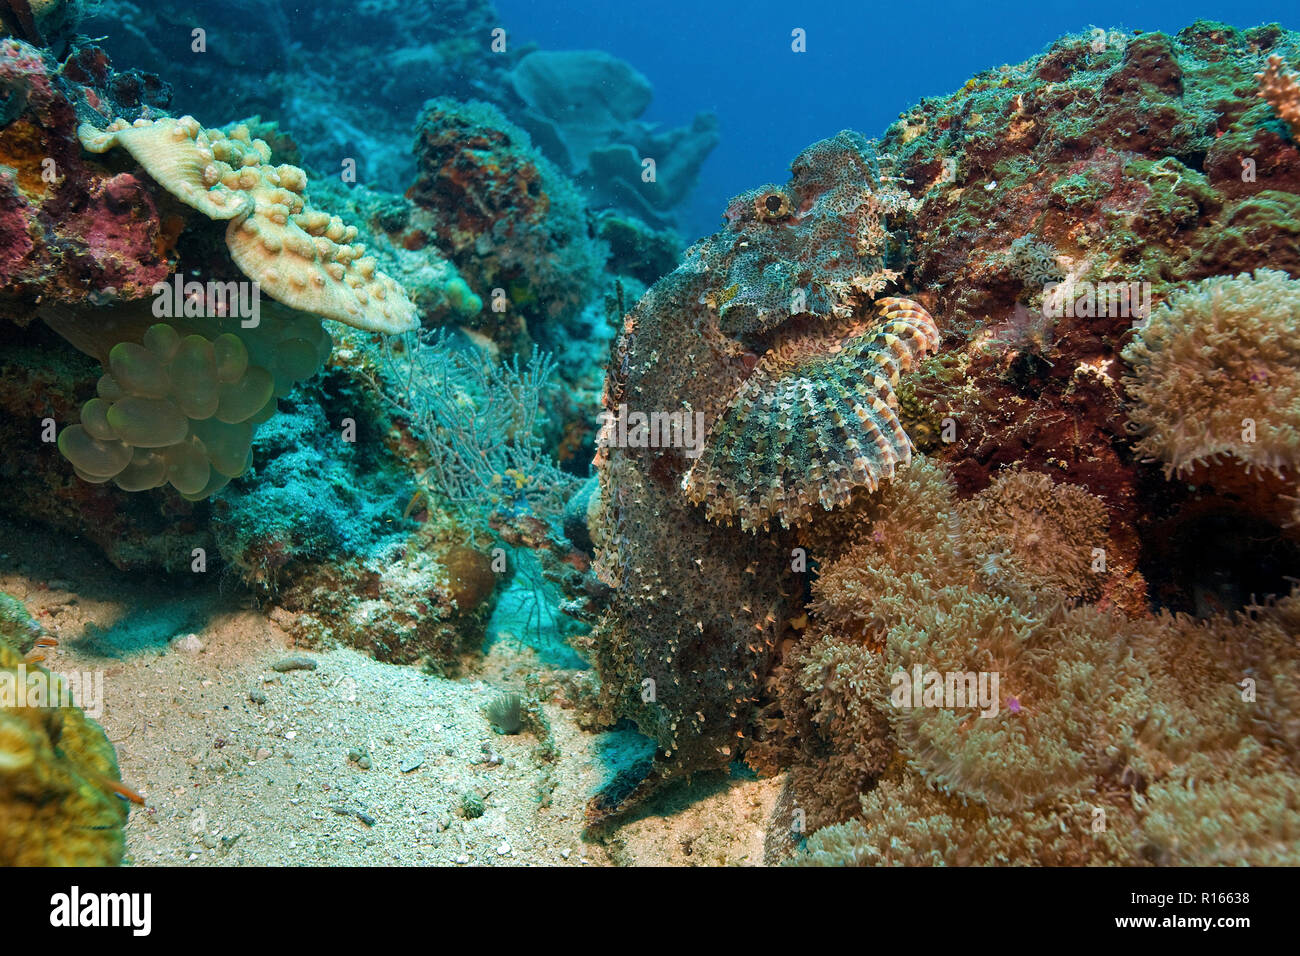 Tassled scorpionfish (Scorpaenopsis oxycephala), camouflé dans un corail, l'île de Malapascua, Cebu, Philippines Banque D'Images